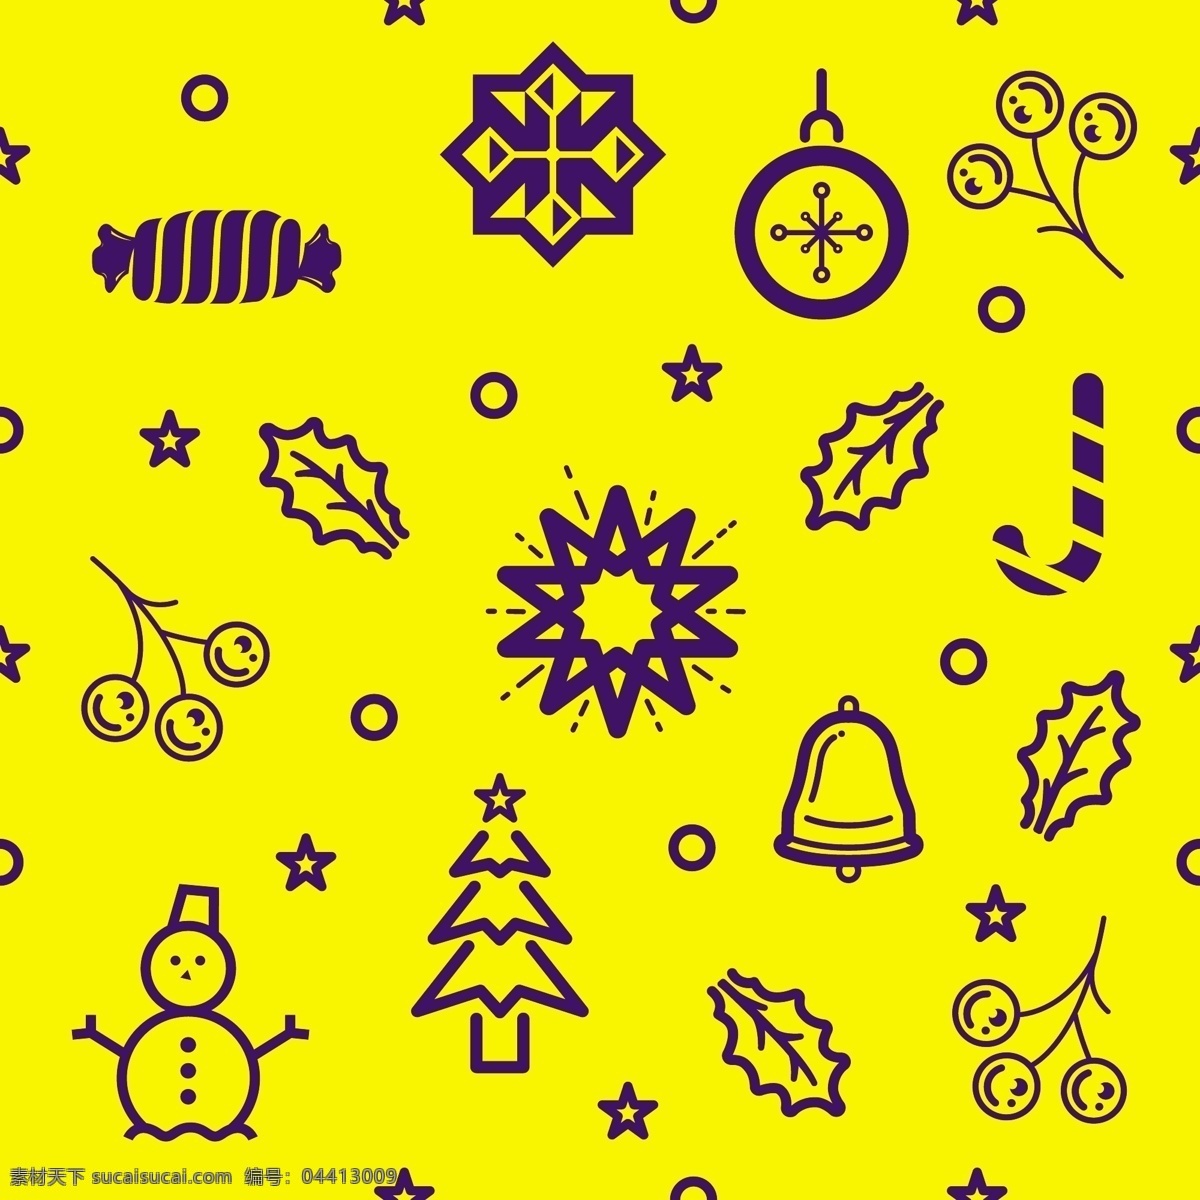 黄色 圣诞节 花纸 元素 包装设计 壁纸 礼品包装 铃铛 圣诞 矢量图库 鲜花包装